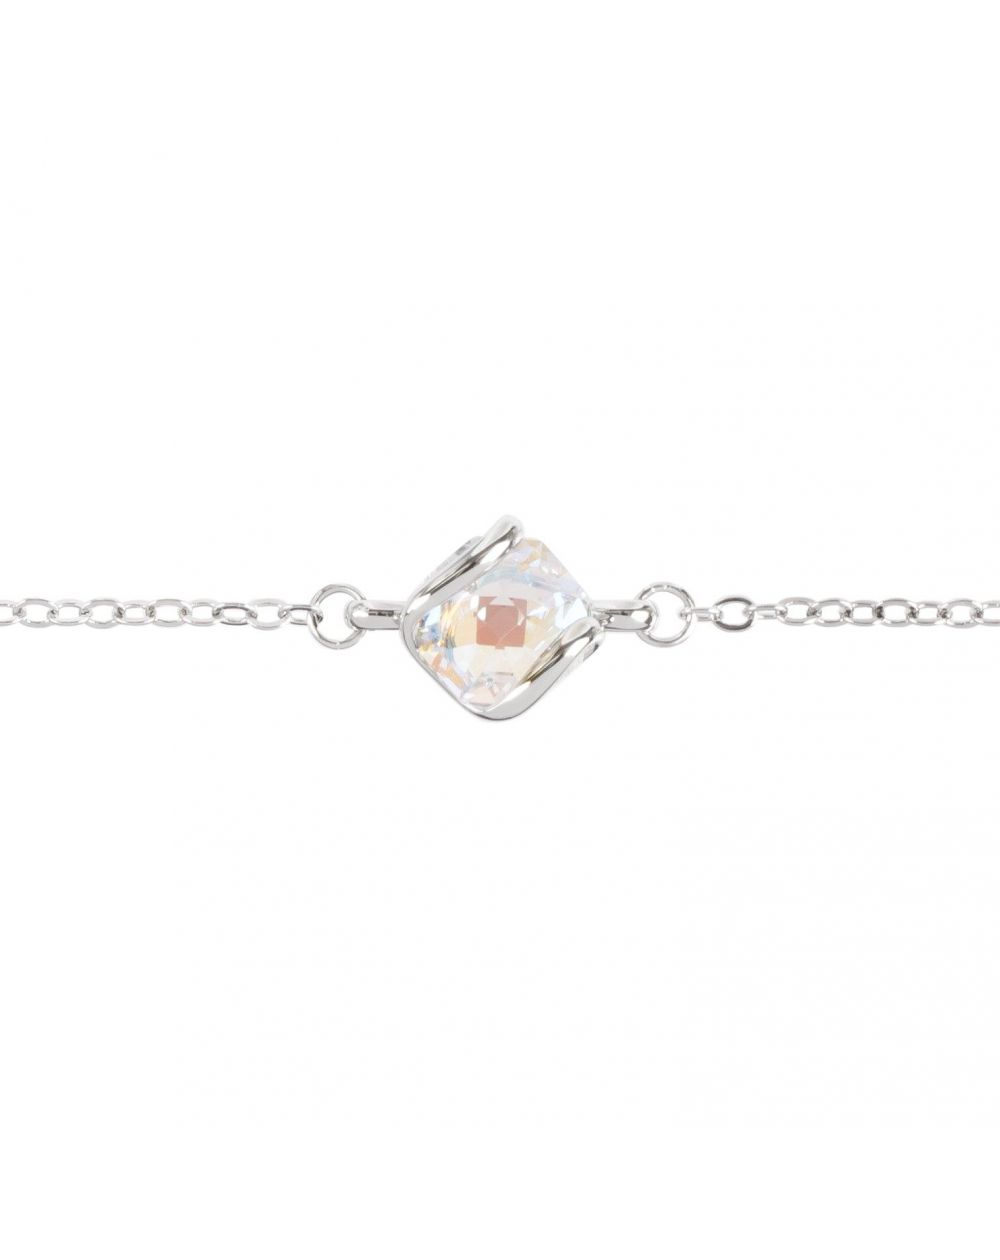 Andrea Marazzini bijoux - Bracelet cristal Swarovski AB